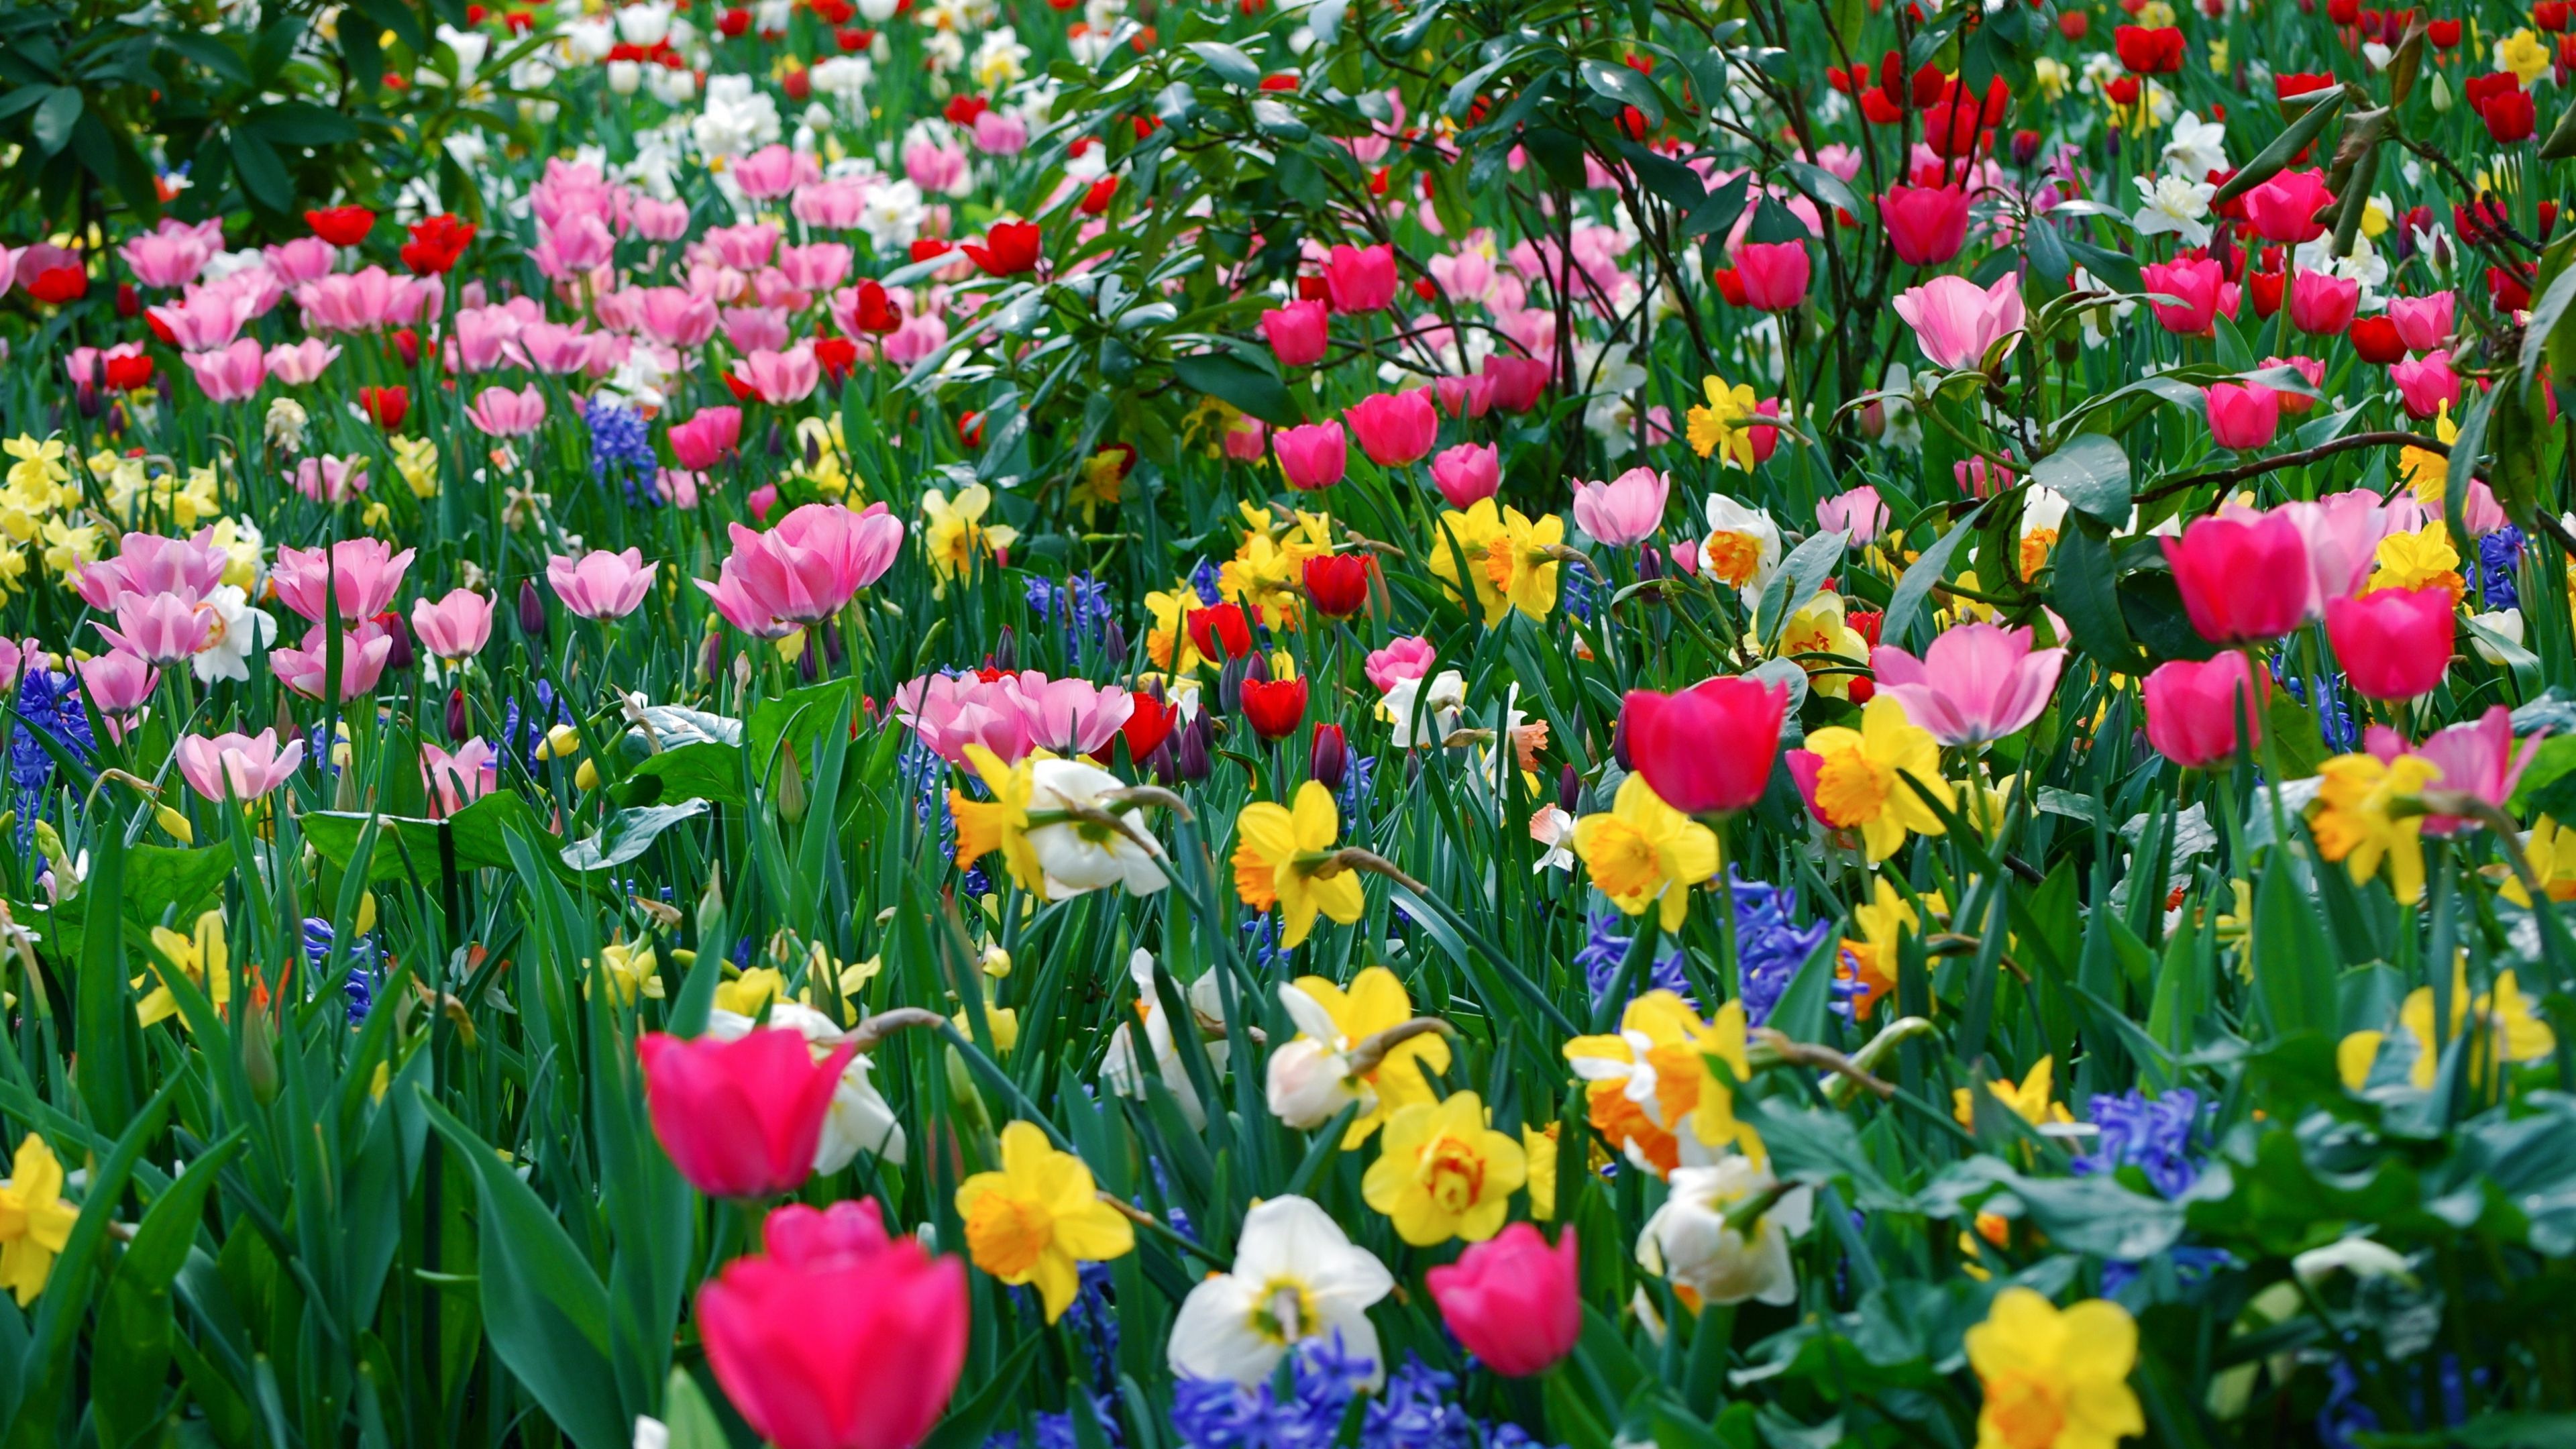 Ultra HD Wallpaper 3840x2160 tulips, daffodils, flowers, meadow, beauty, spring 4K Ultra HD HD Backg. Spring flowers wallpaper, Flowers perennials, Spring flowers